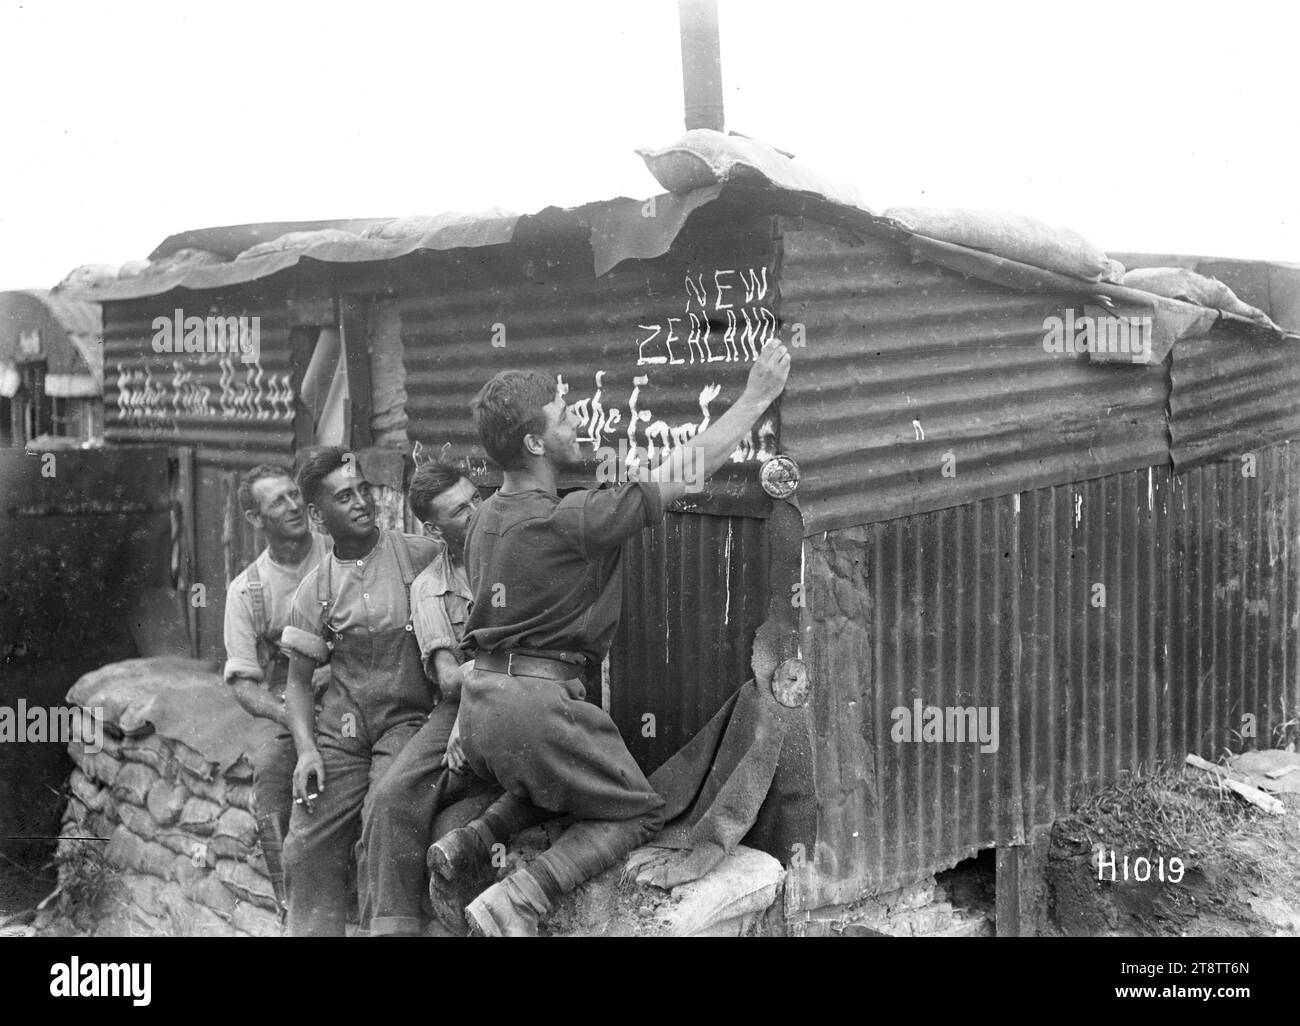 Soldati neozelandesi al campo, prima guerra mondiale, Un soldato neozelandese scrive "nuova Zelanda" all'esterno di un edificio in ferro ondulato a piacere degli altri tre soldati che guardano. Preso durante la prima guerra mondiale Foto Stock